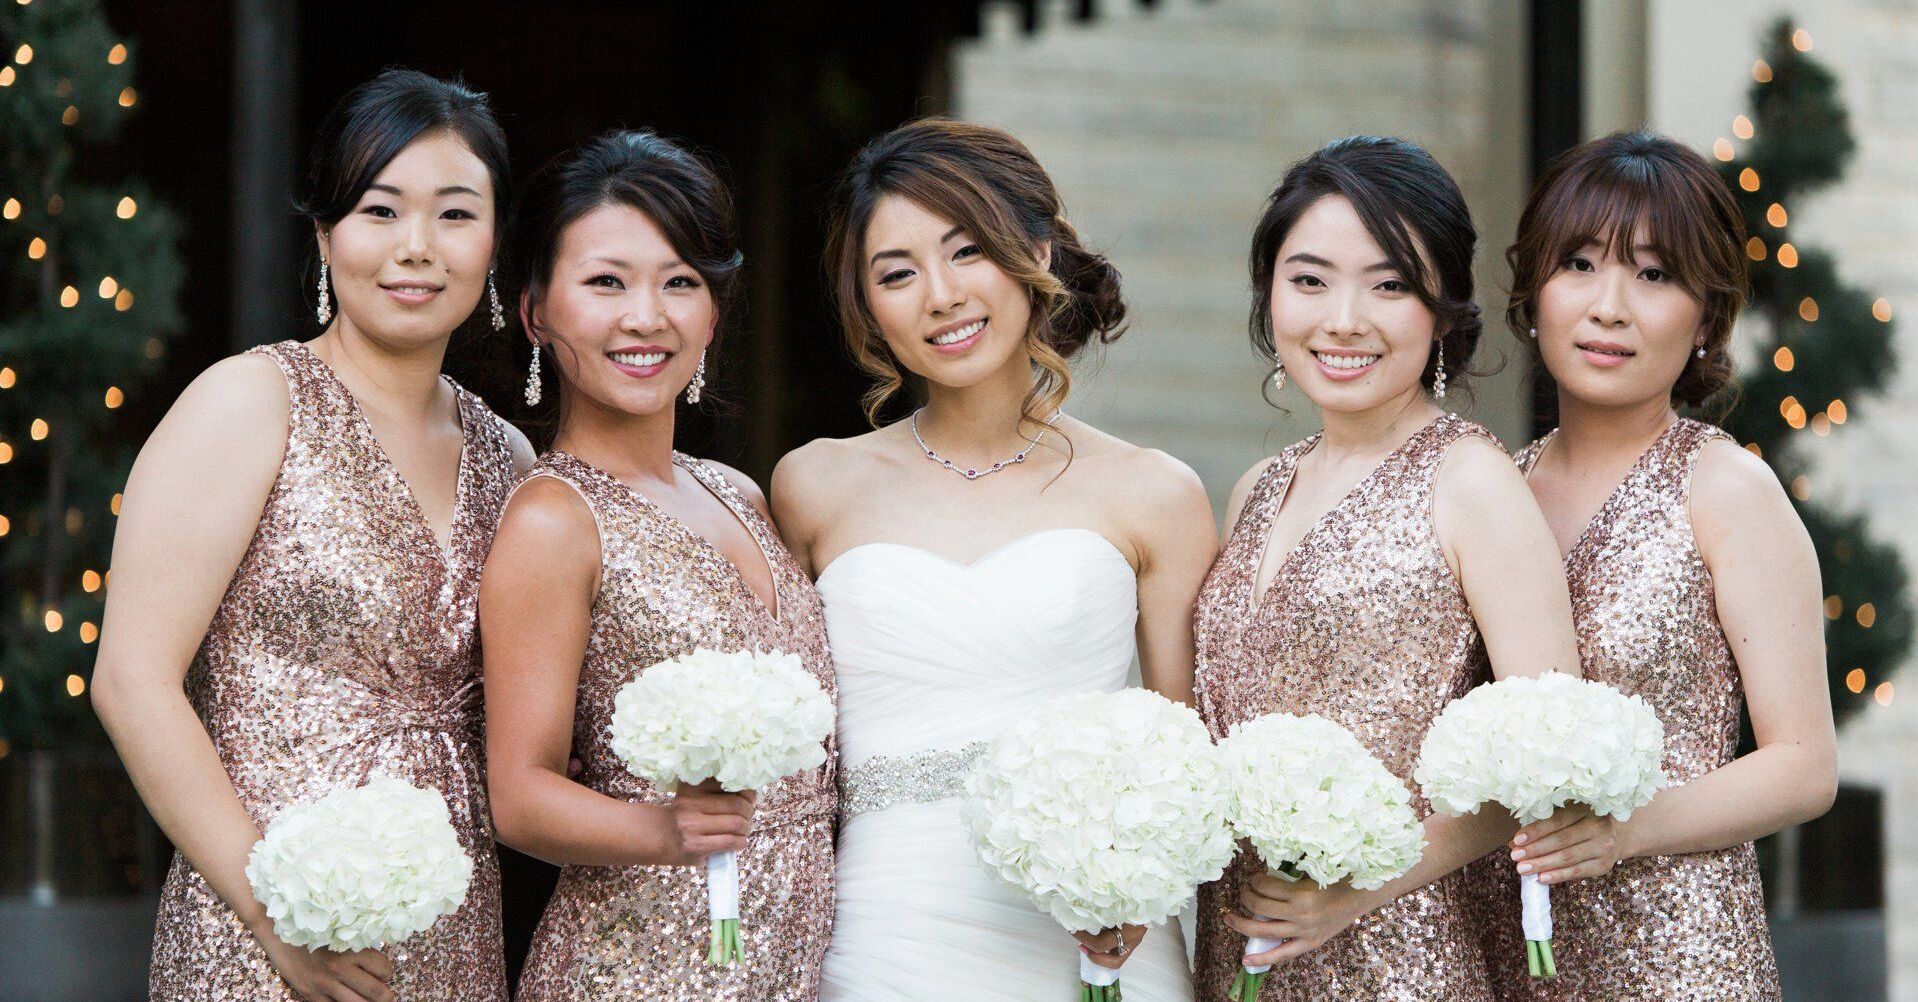 bridesmaid dresses sequin rose gold